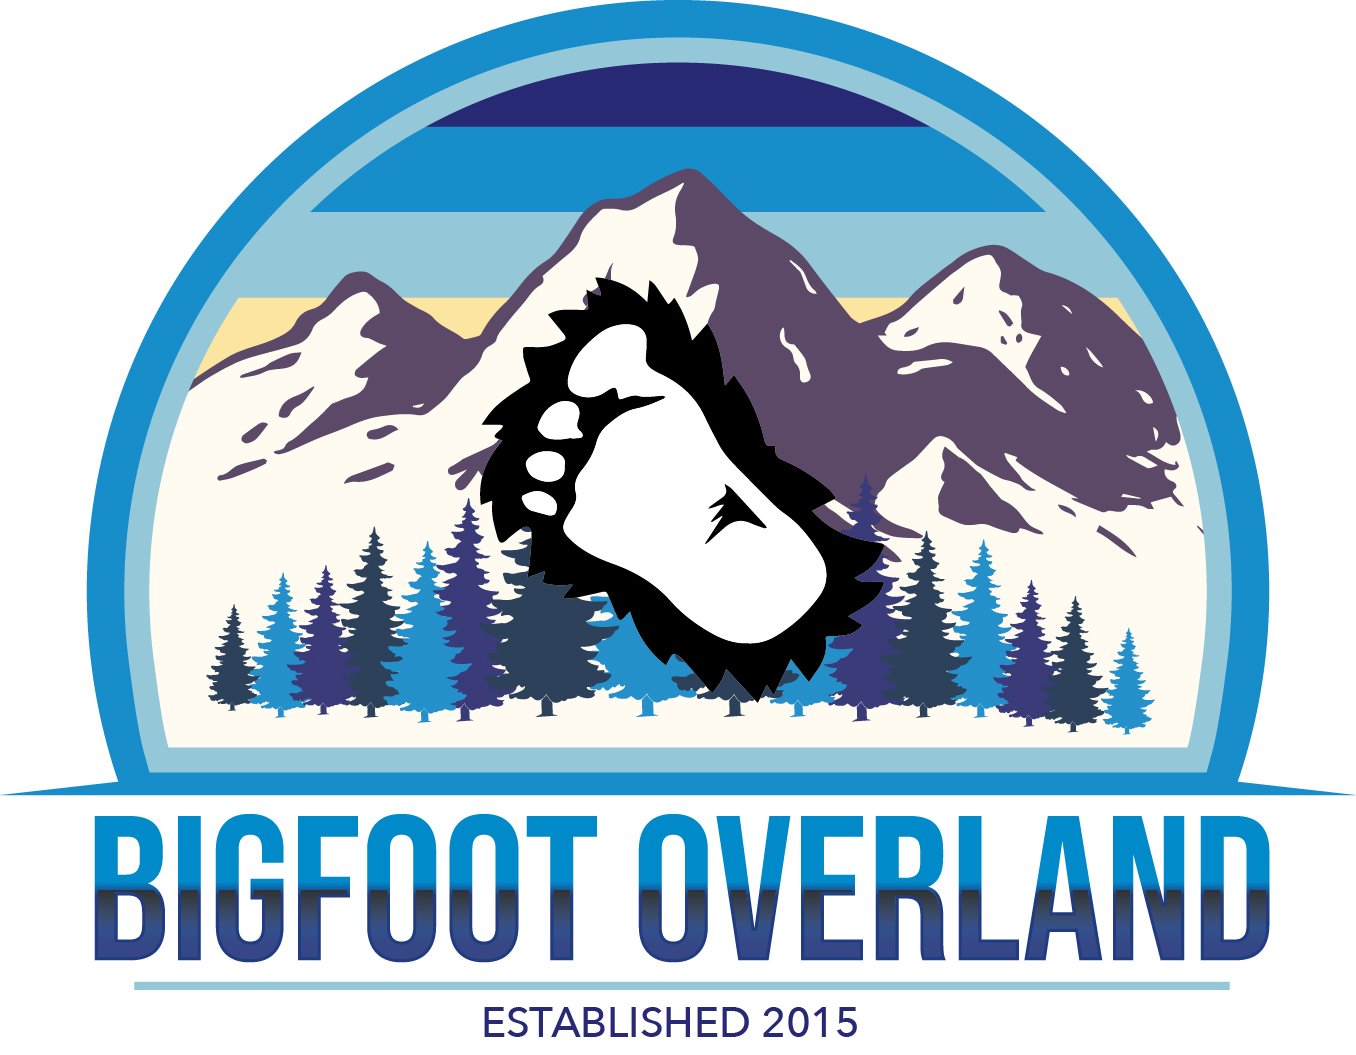  BIGFOOT OVERLAND ESTABLISHED 2015